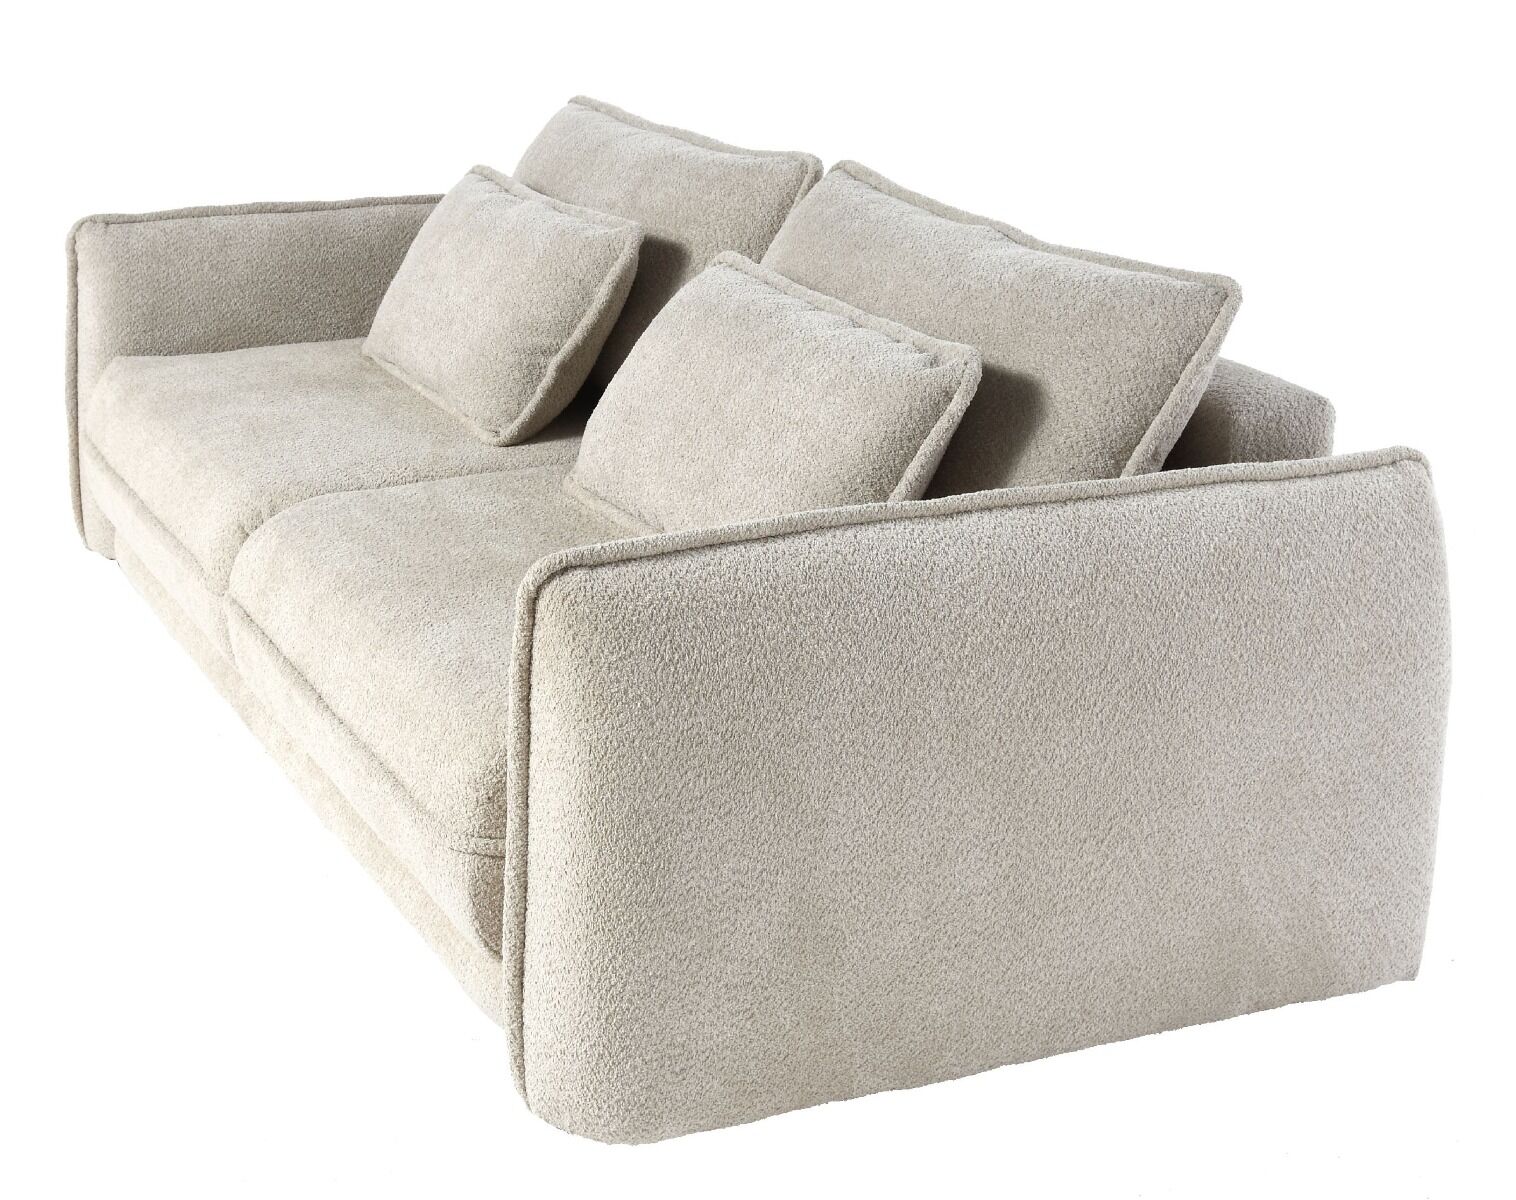 Sofa z funkcją spania Passion 253x120x74cm